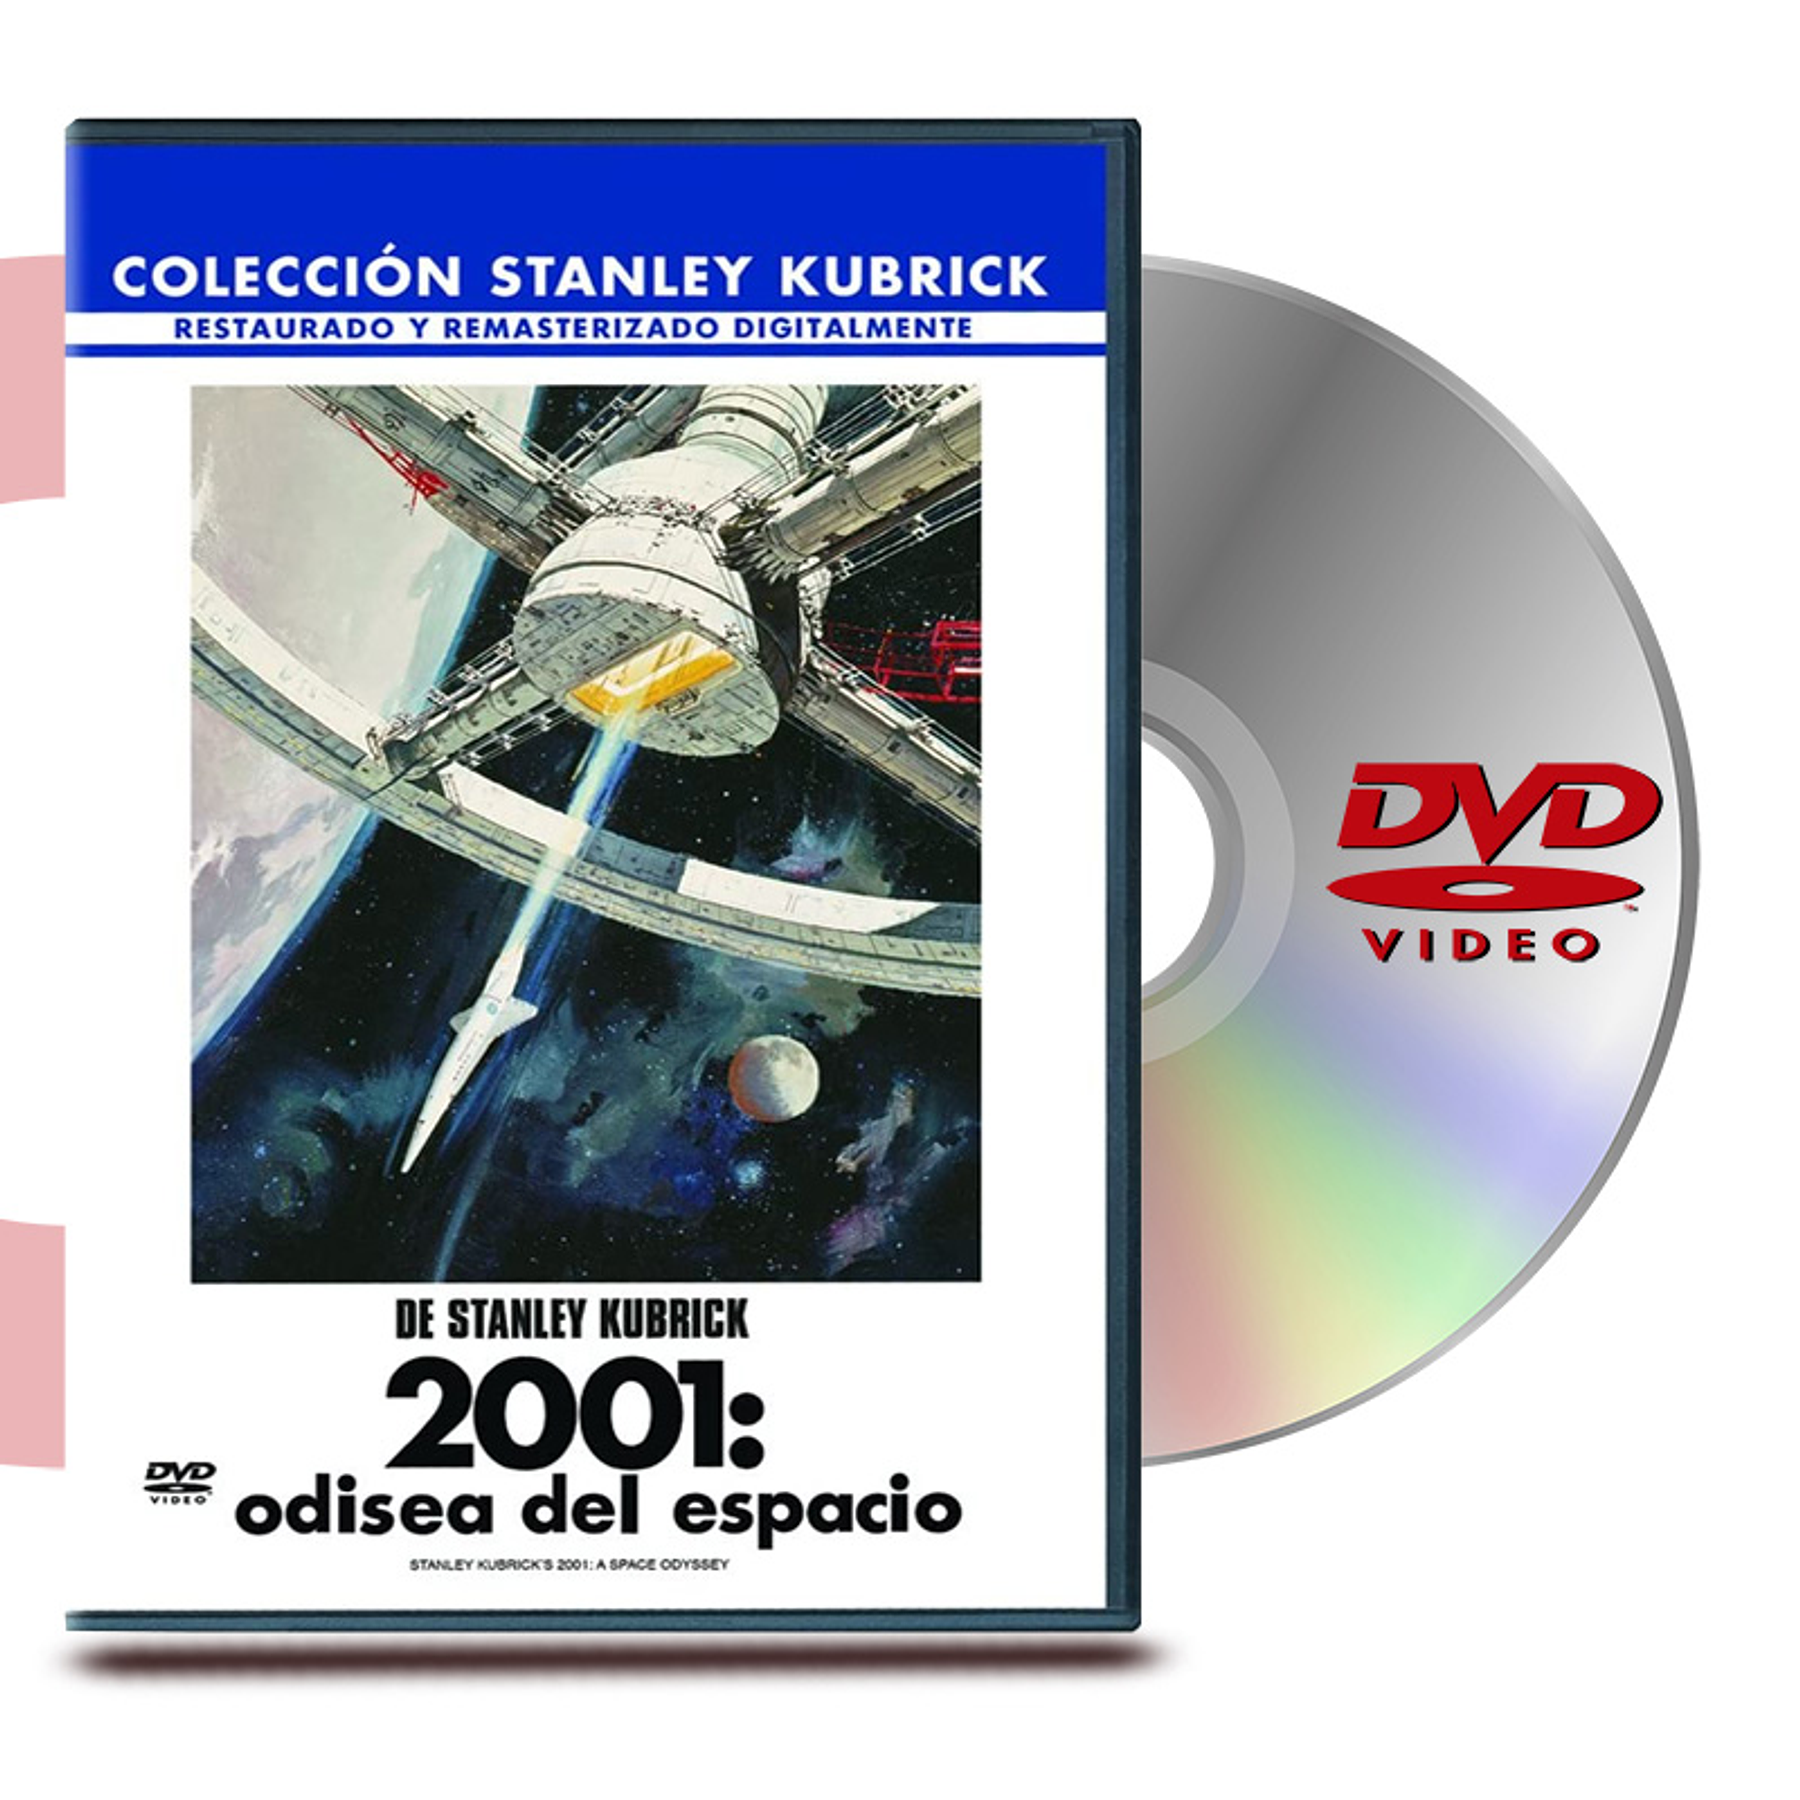 DVD 2001 ODISEA DEL ESPACIO